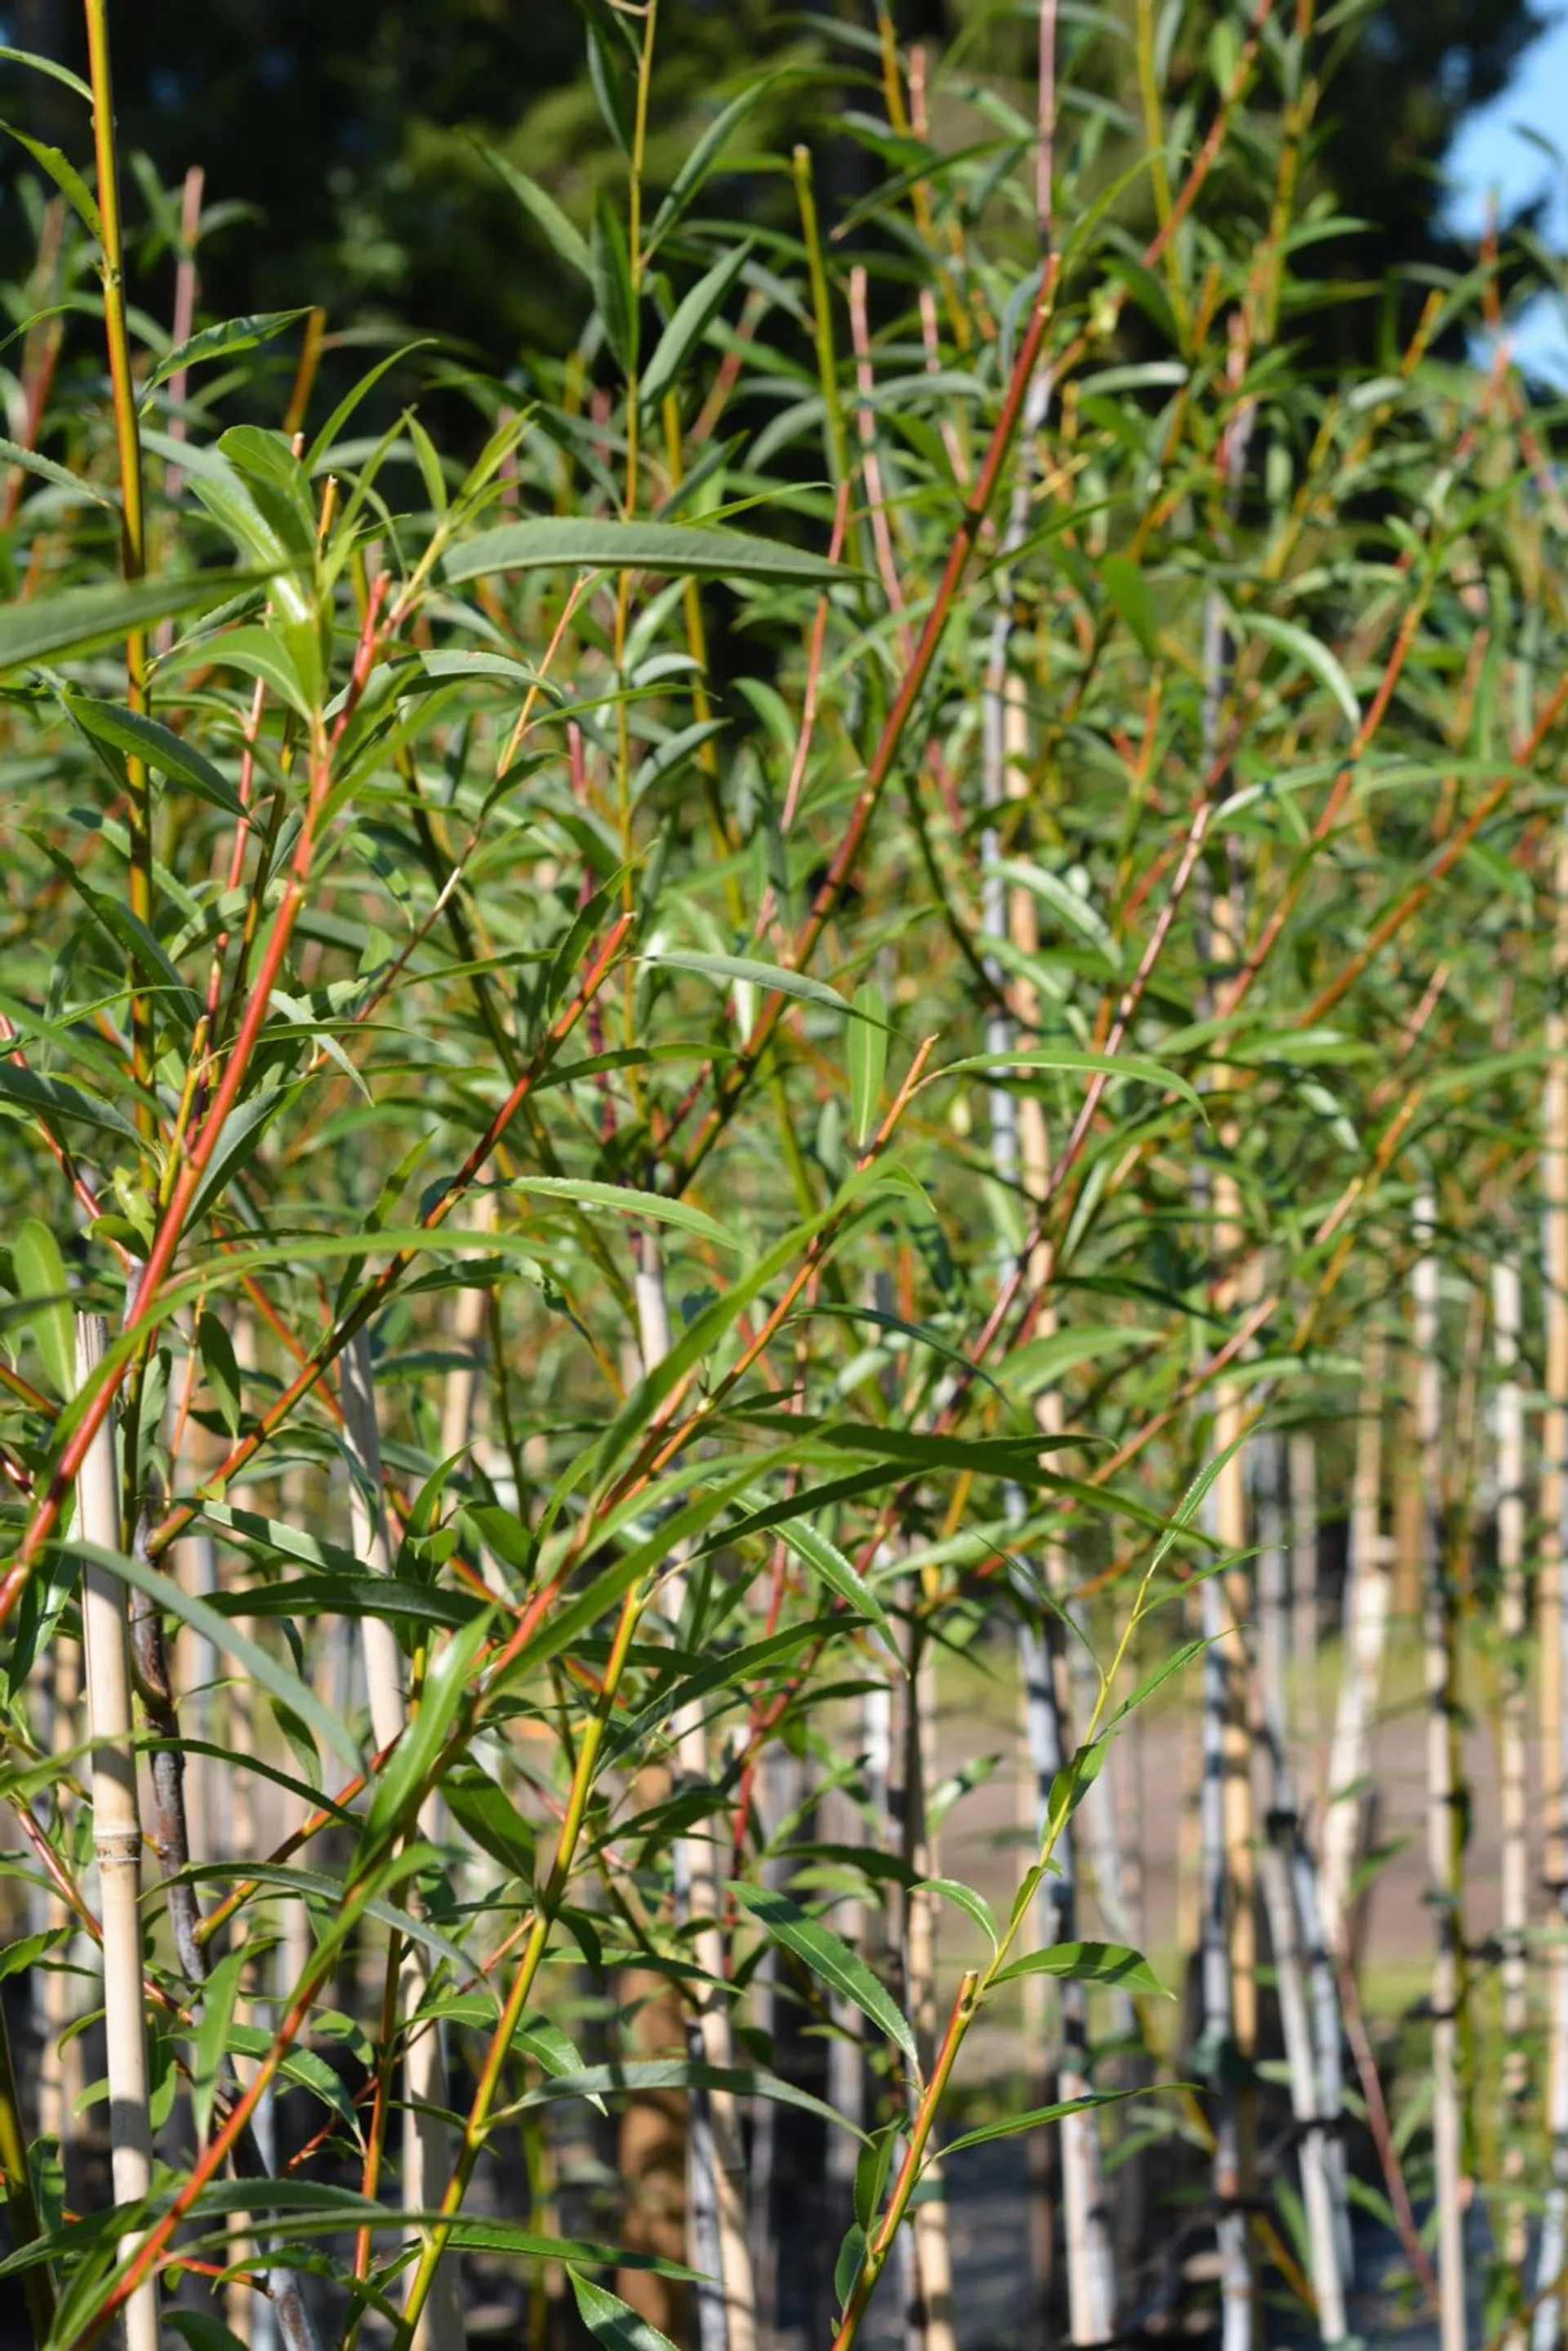 Huurrepaju 150-250 astiataimi Prunus domestica 'Eurazia'
Salix daphnoides subsp. Acutifolia